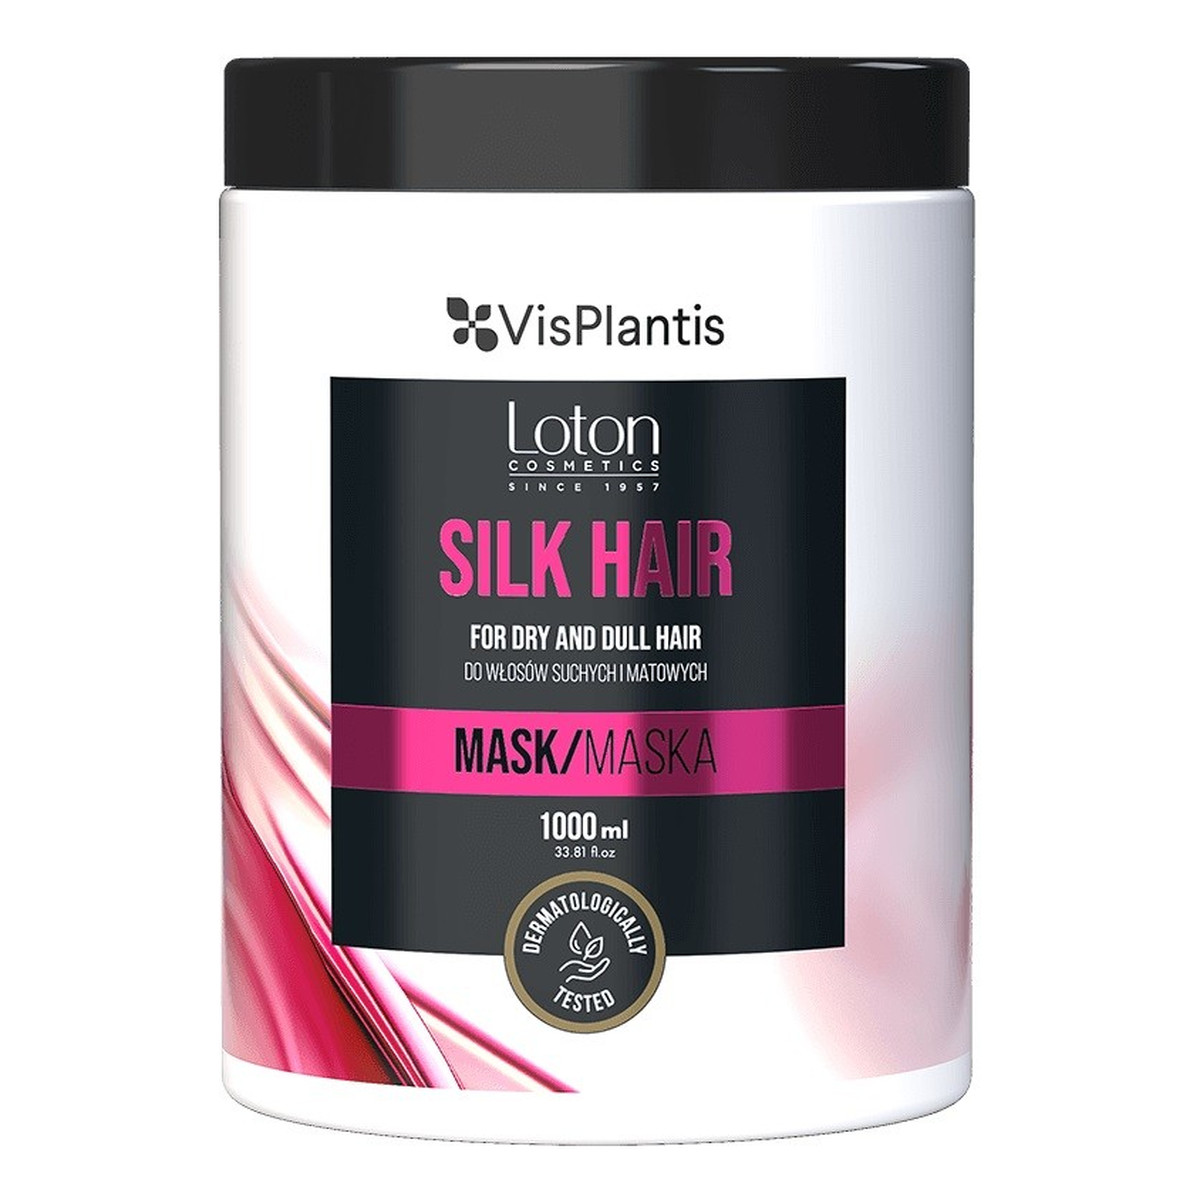 Vis Plantis Loton Maska z jedwabiem do włosów suchych i matowych - Silk Hair 1000ml